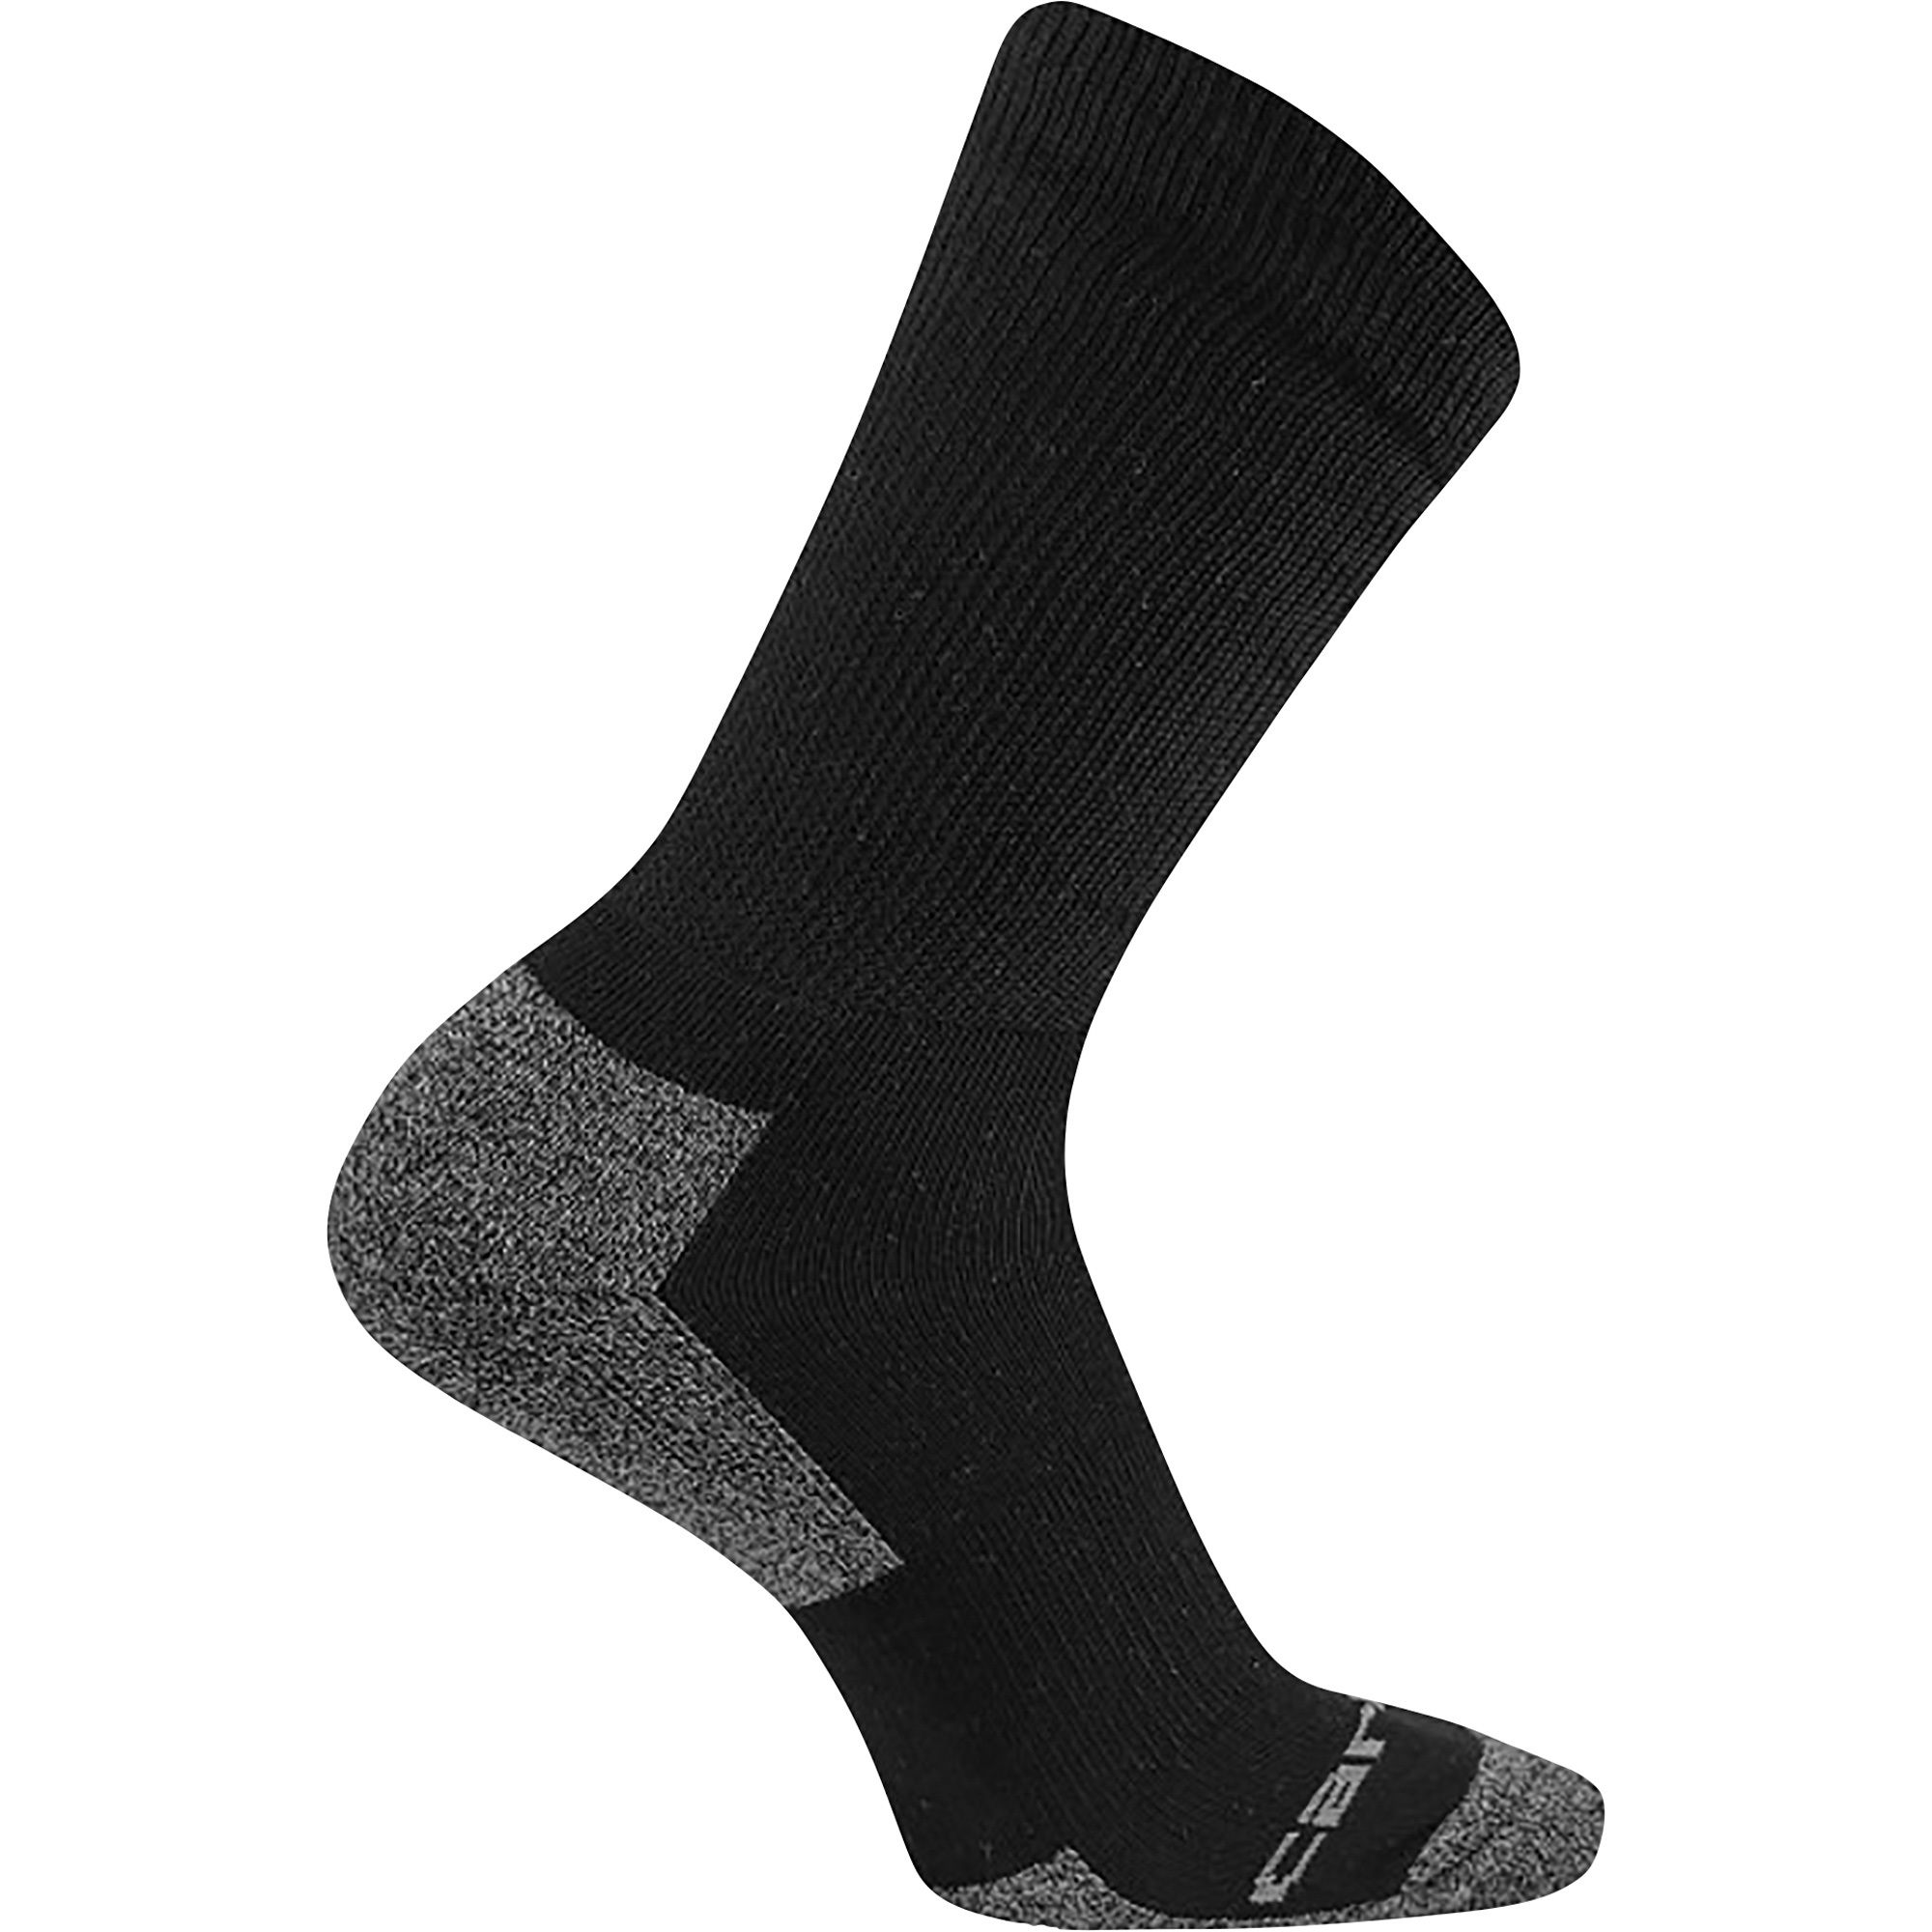 Carhartt Menâs Comfort Stretch Crew Socks with FastDry Technology â 3 Pairs, XL, Black, Model A2213-3 BLACK XL